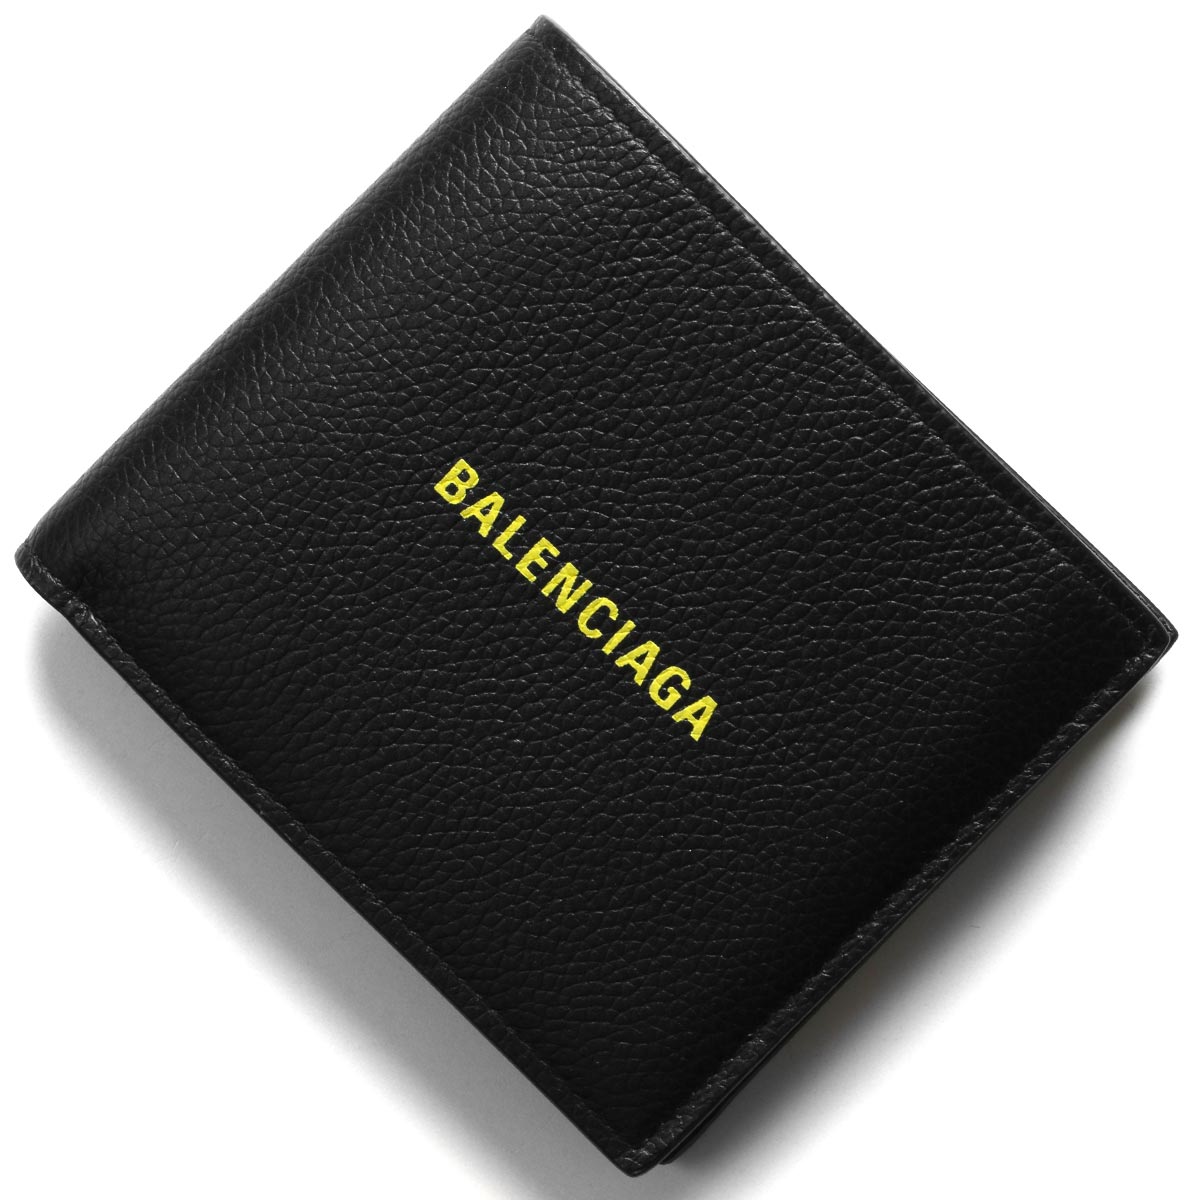 楽天市場 バレンシアガ 二つ折り財布 財布 メンズ レディース キャッシュ ブラック フルオイエロー 1izf3 1072 Balenciaga ブルークウォッチカンパニー